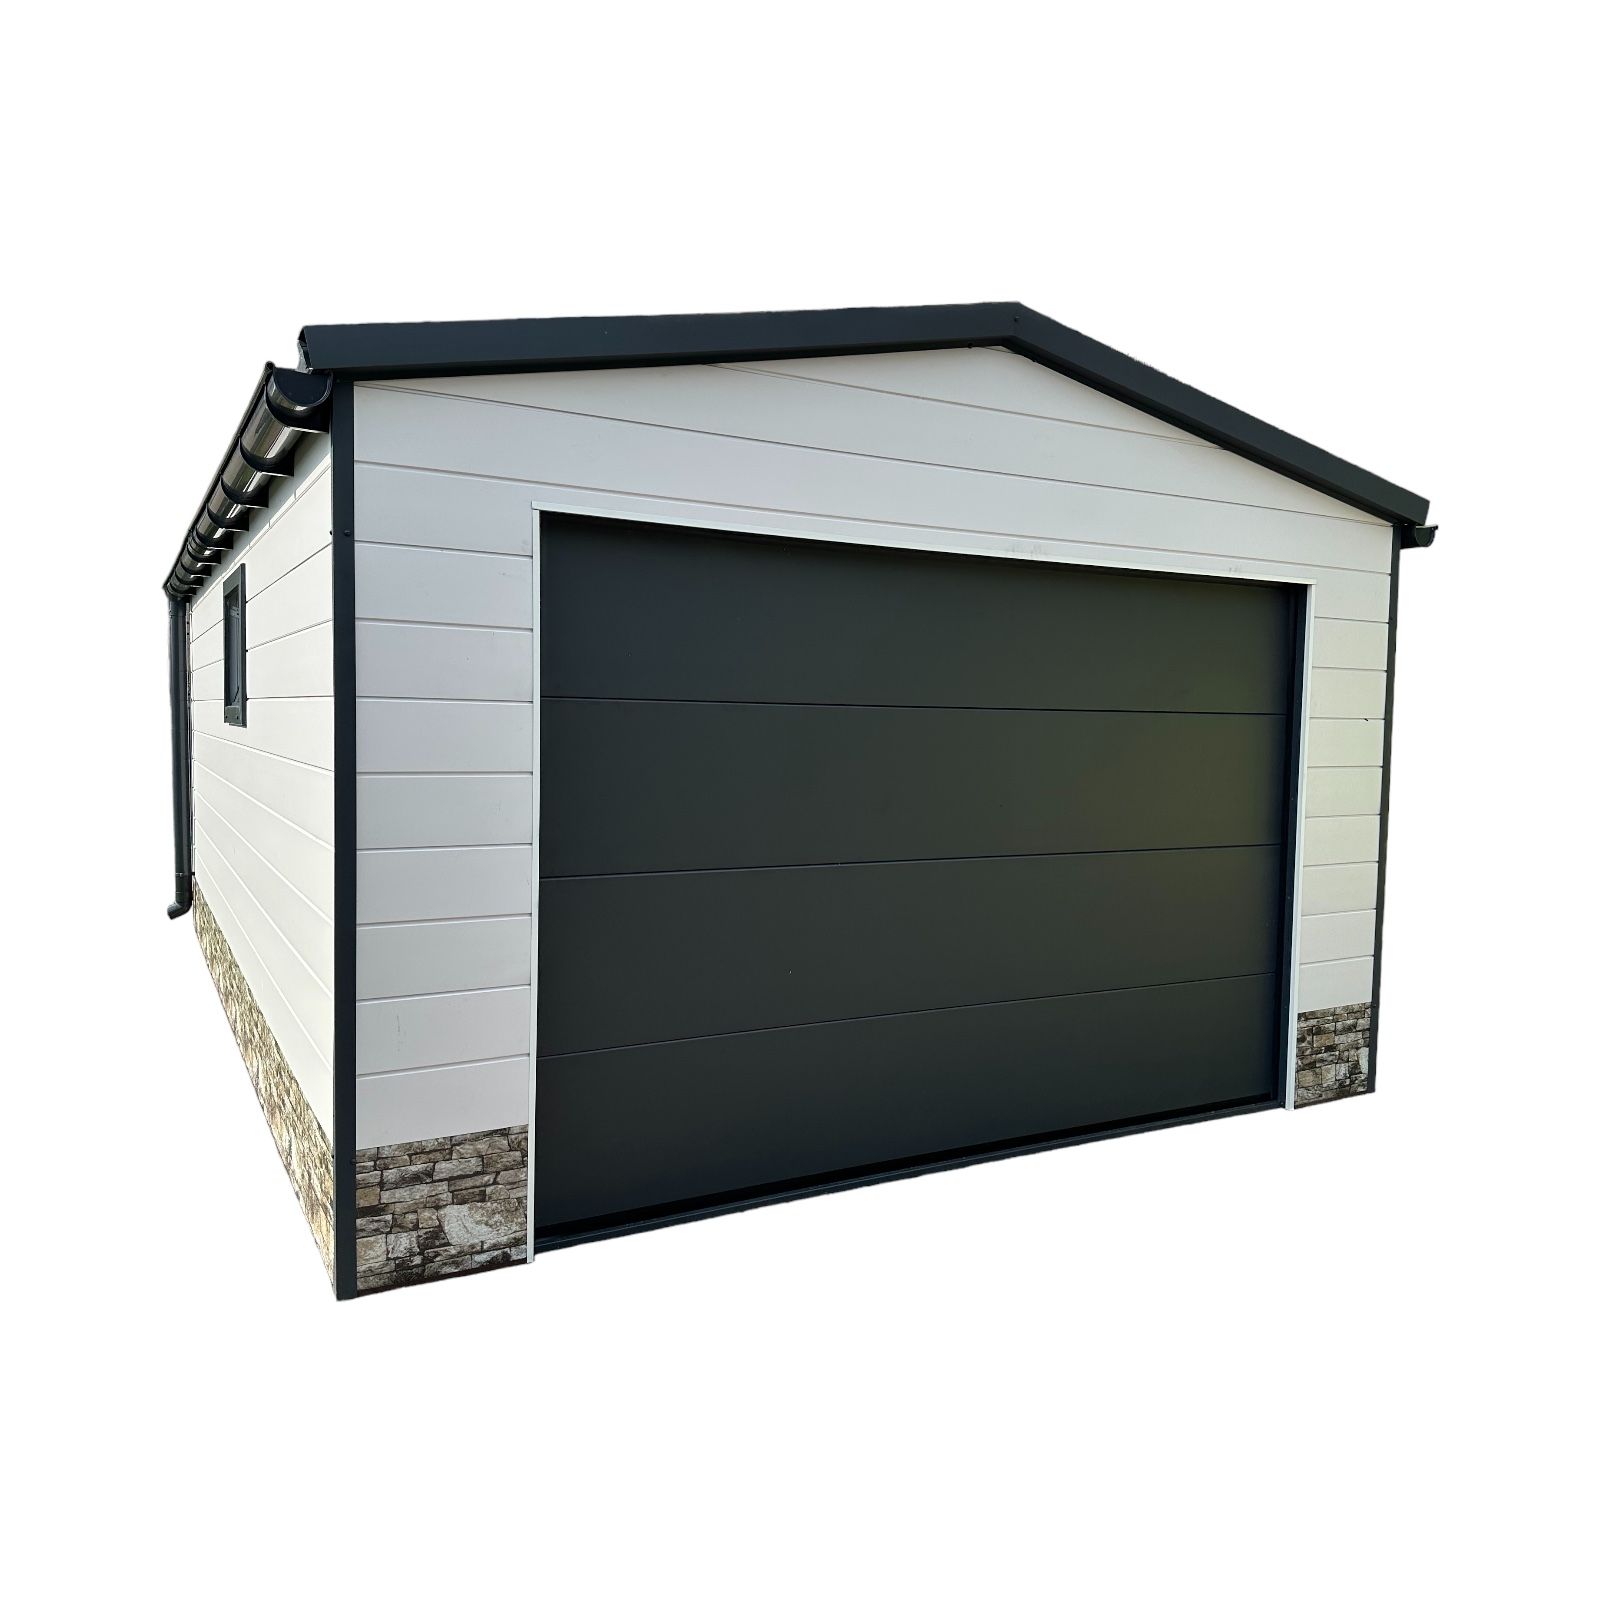 Garaż ocieplany z płyty warstwowej 4x6m brama z automatem 300×194cm